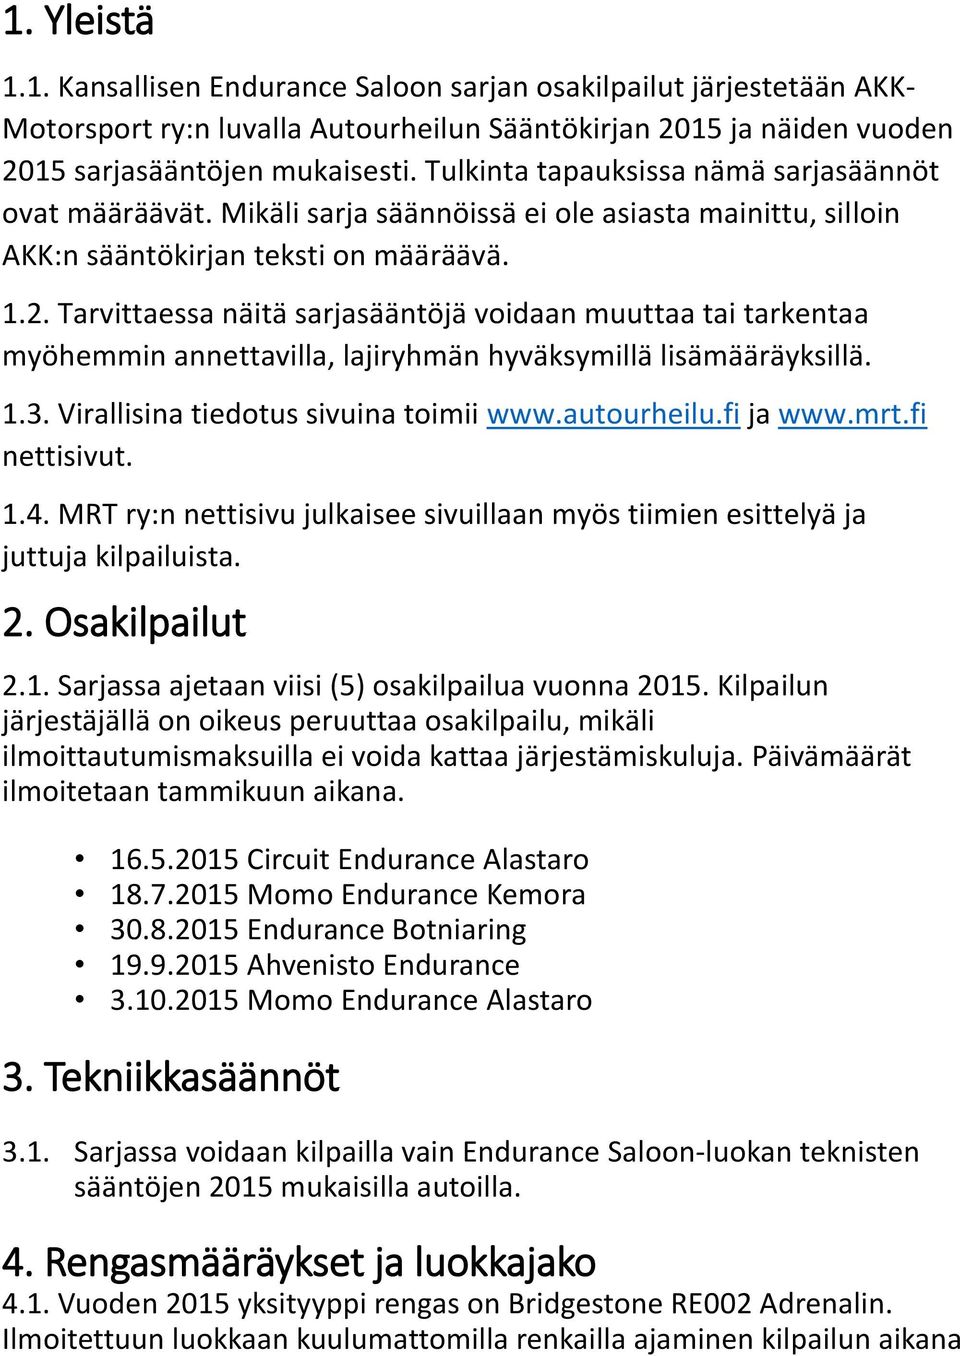 Tarvittaessa näitä sarjasääntöjä voidaan muuttaa tai tarkentaa myöhemmin annettavilla, lajiryhmän hyväksymillä lisämääräyksillä. 1.3. Virallisina tiedotus sivuina toimii www.autourheilu.fi ja www.mrt.